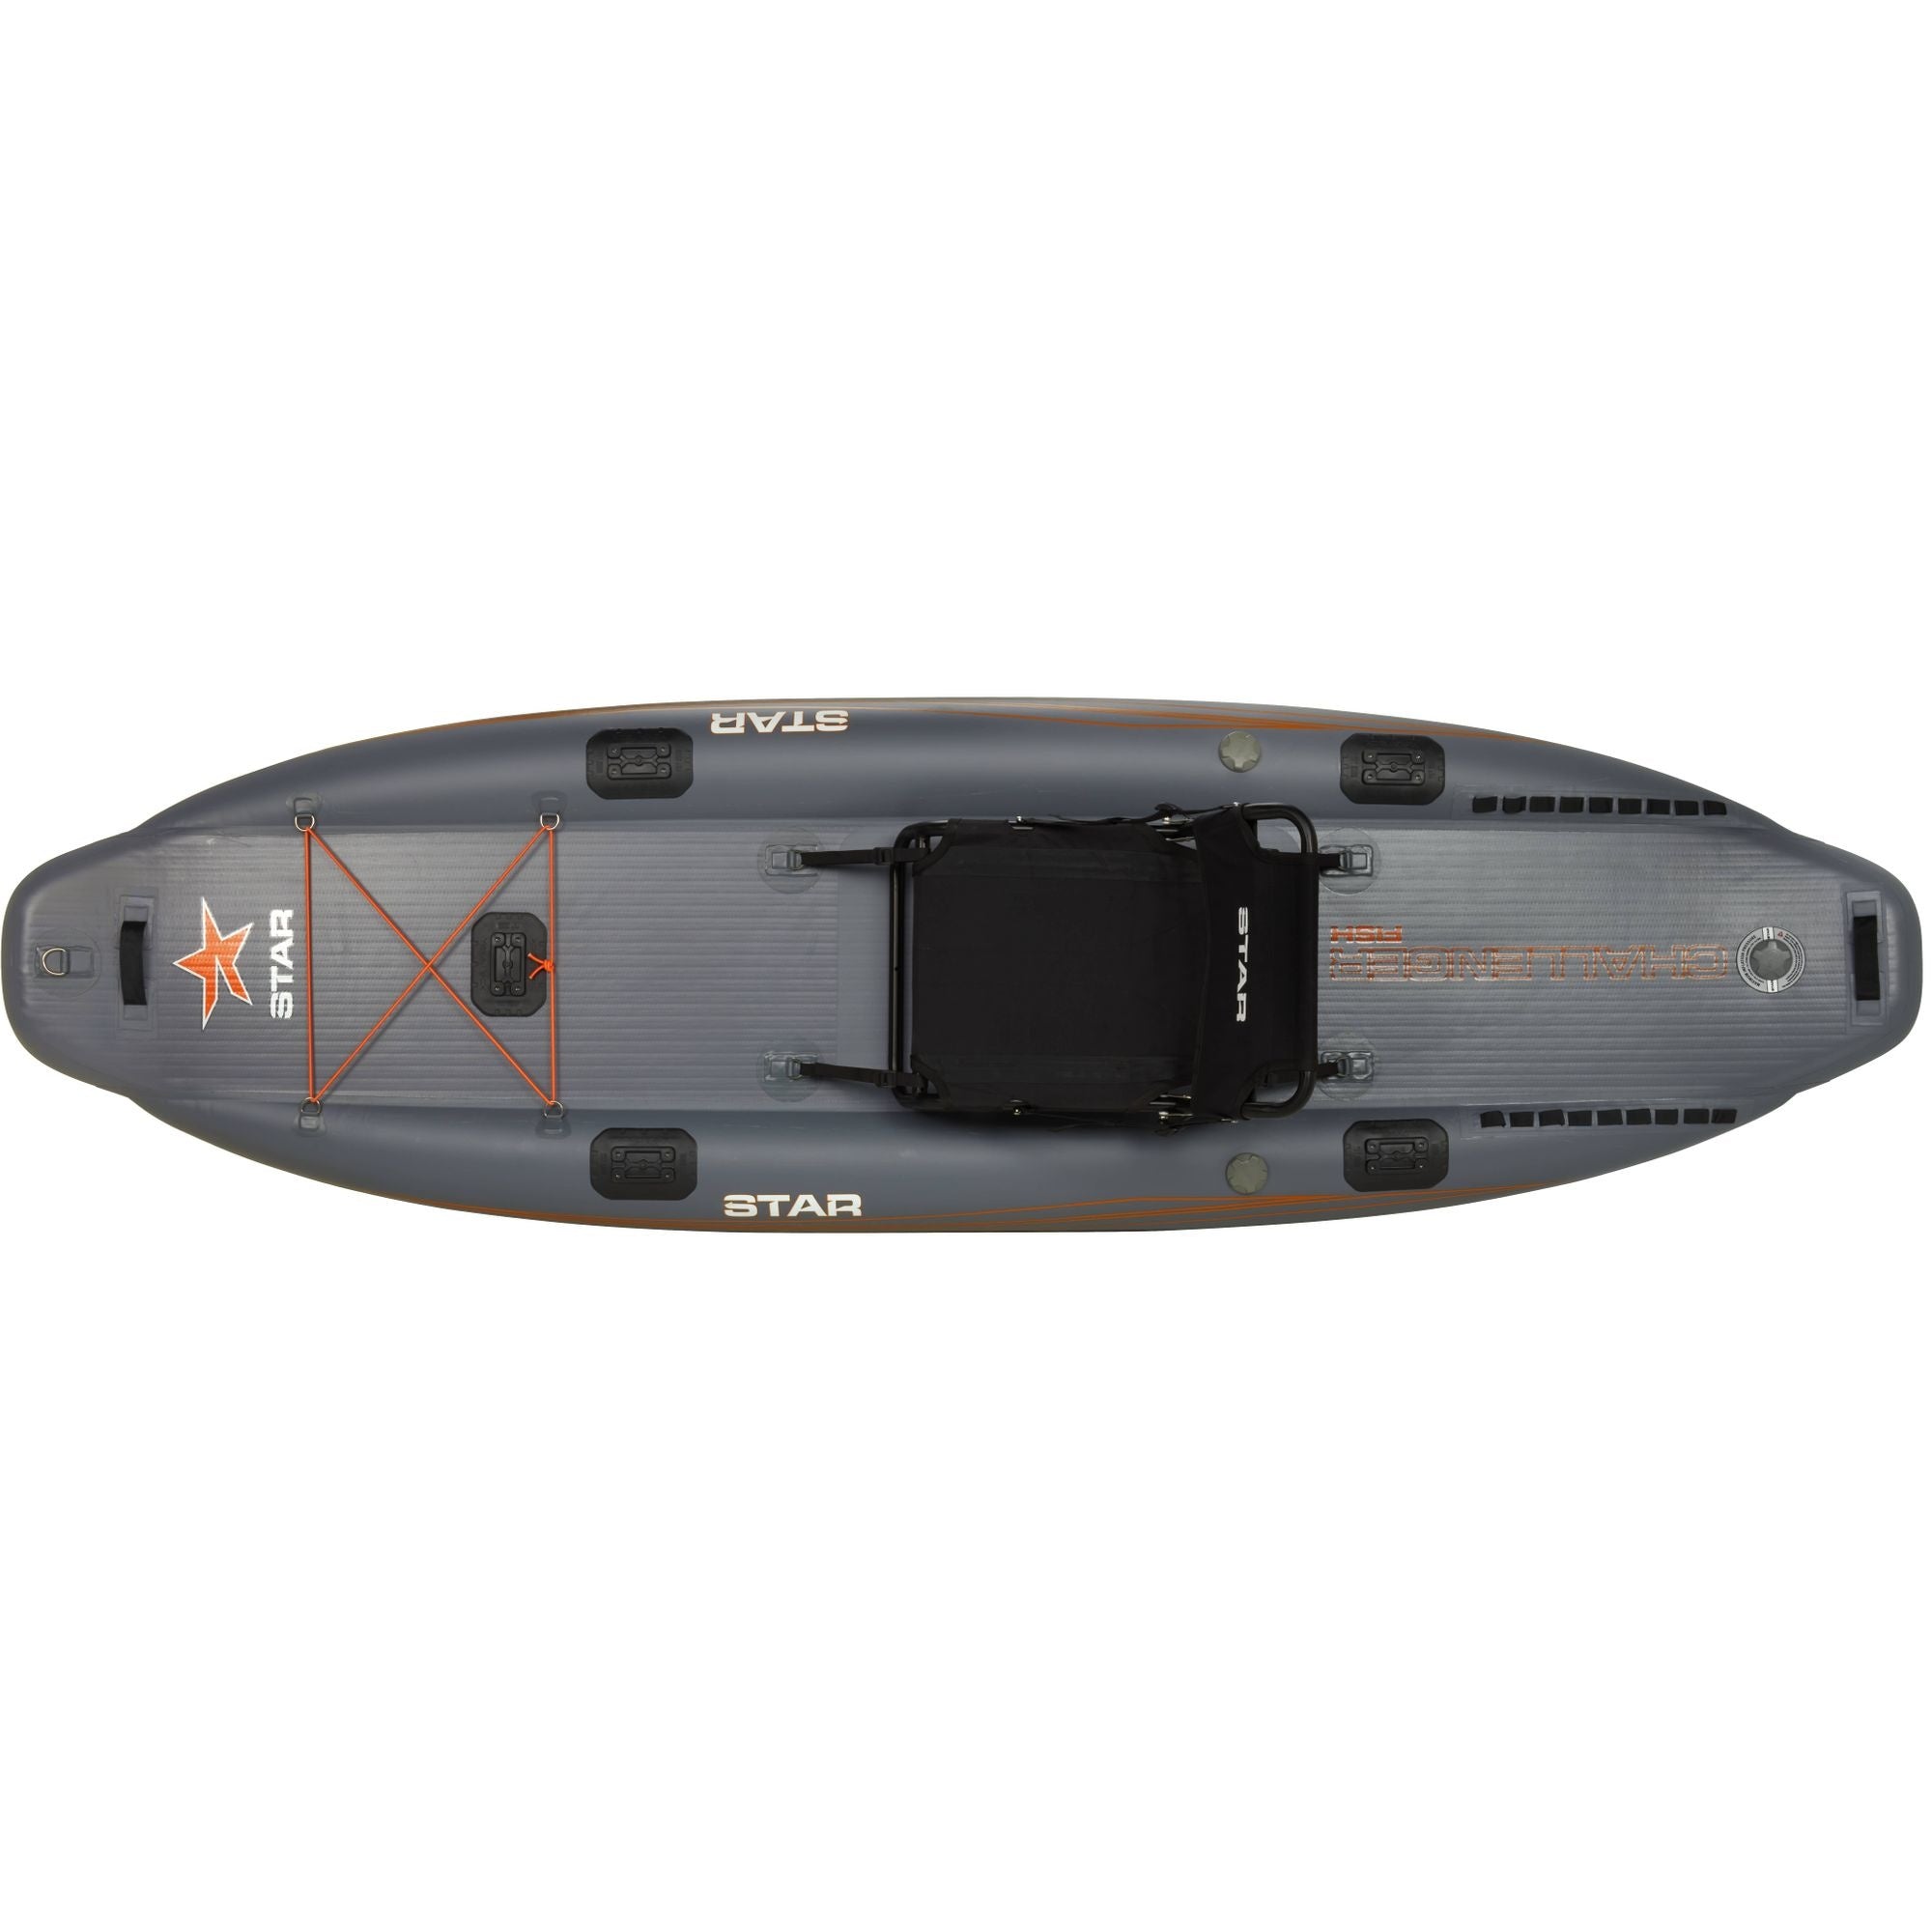 STAR - Challenger Inflatable Fishing Kayak